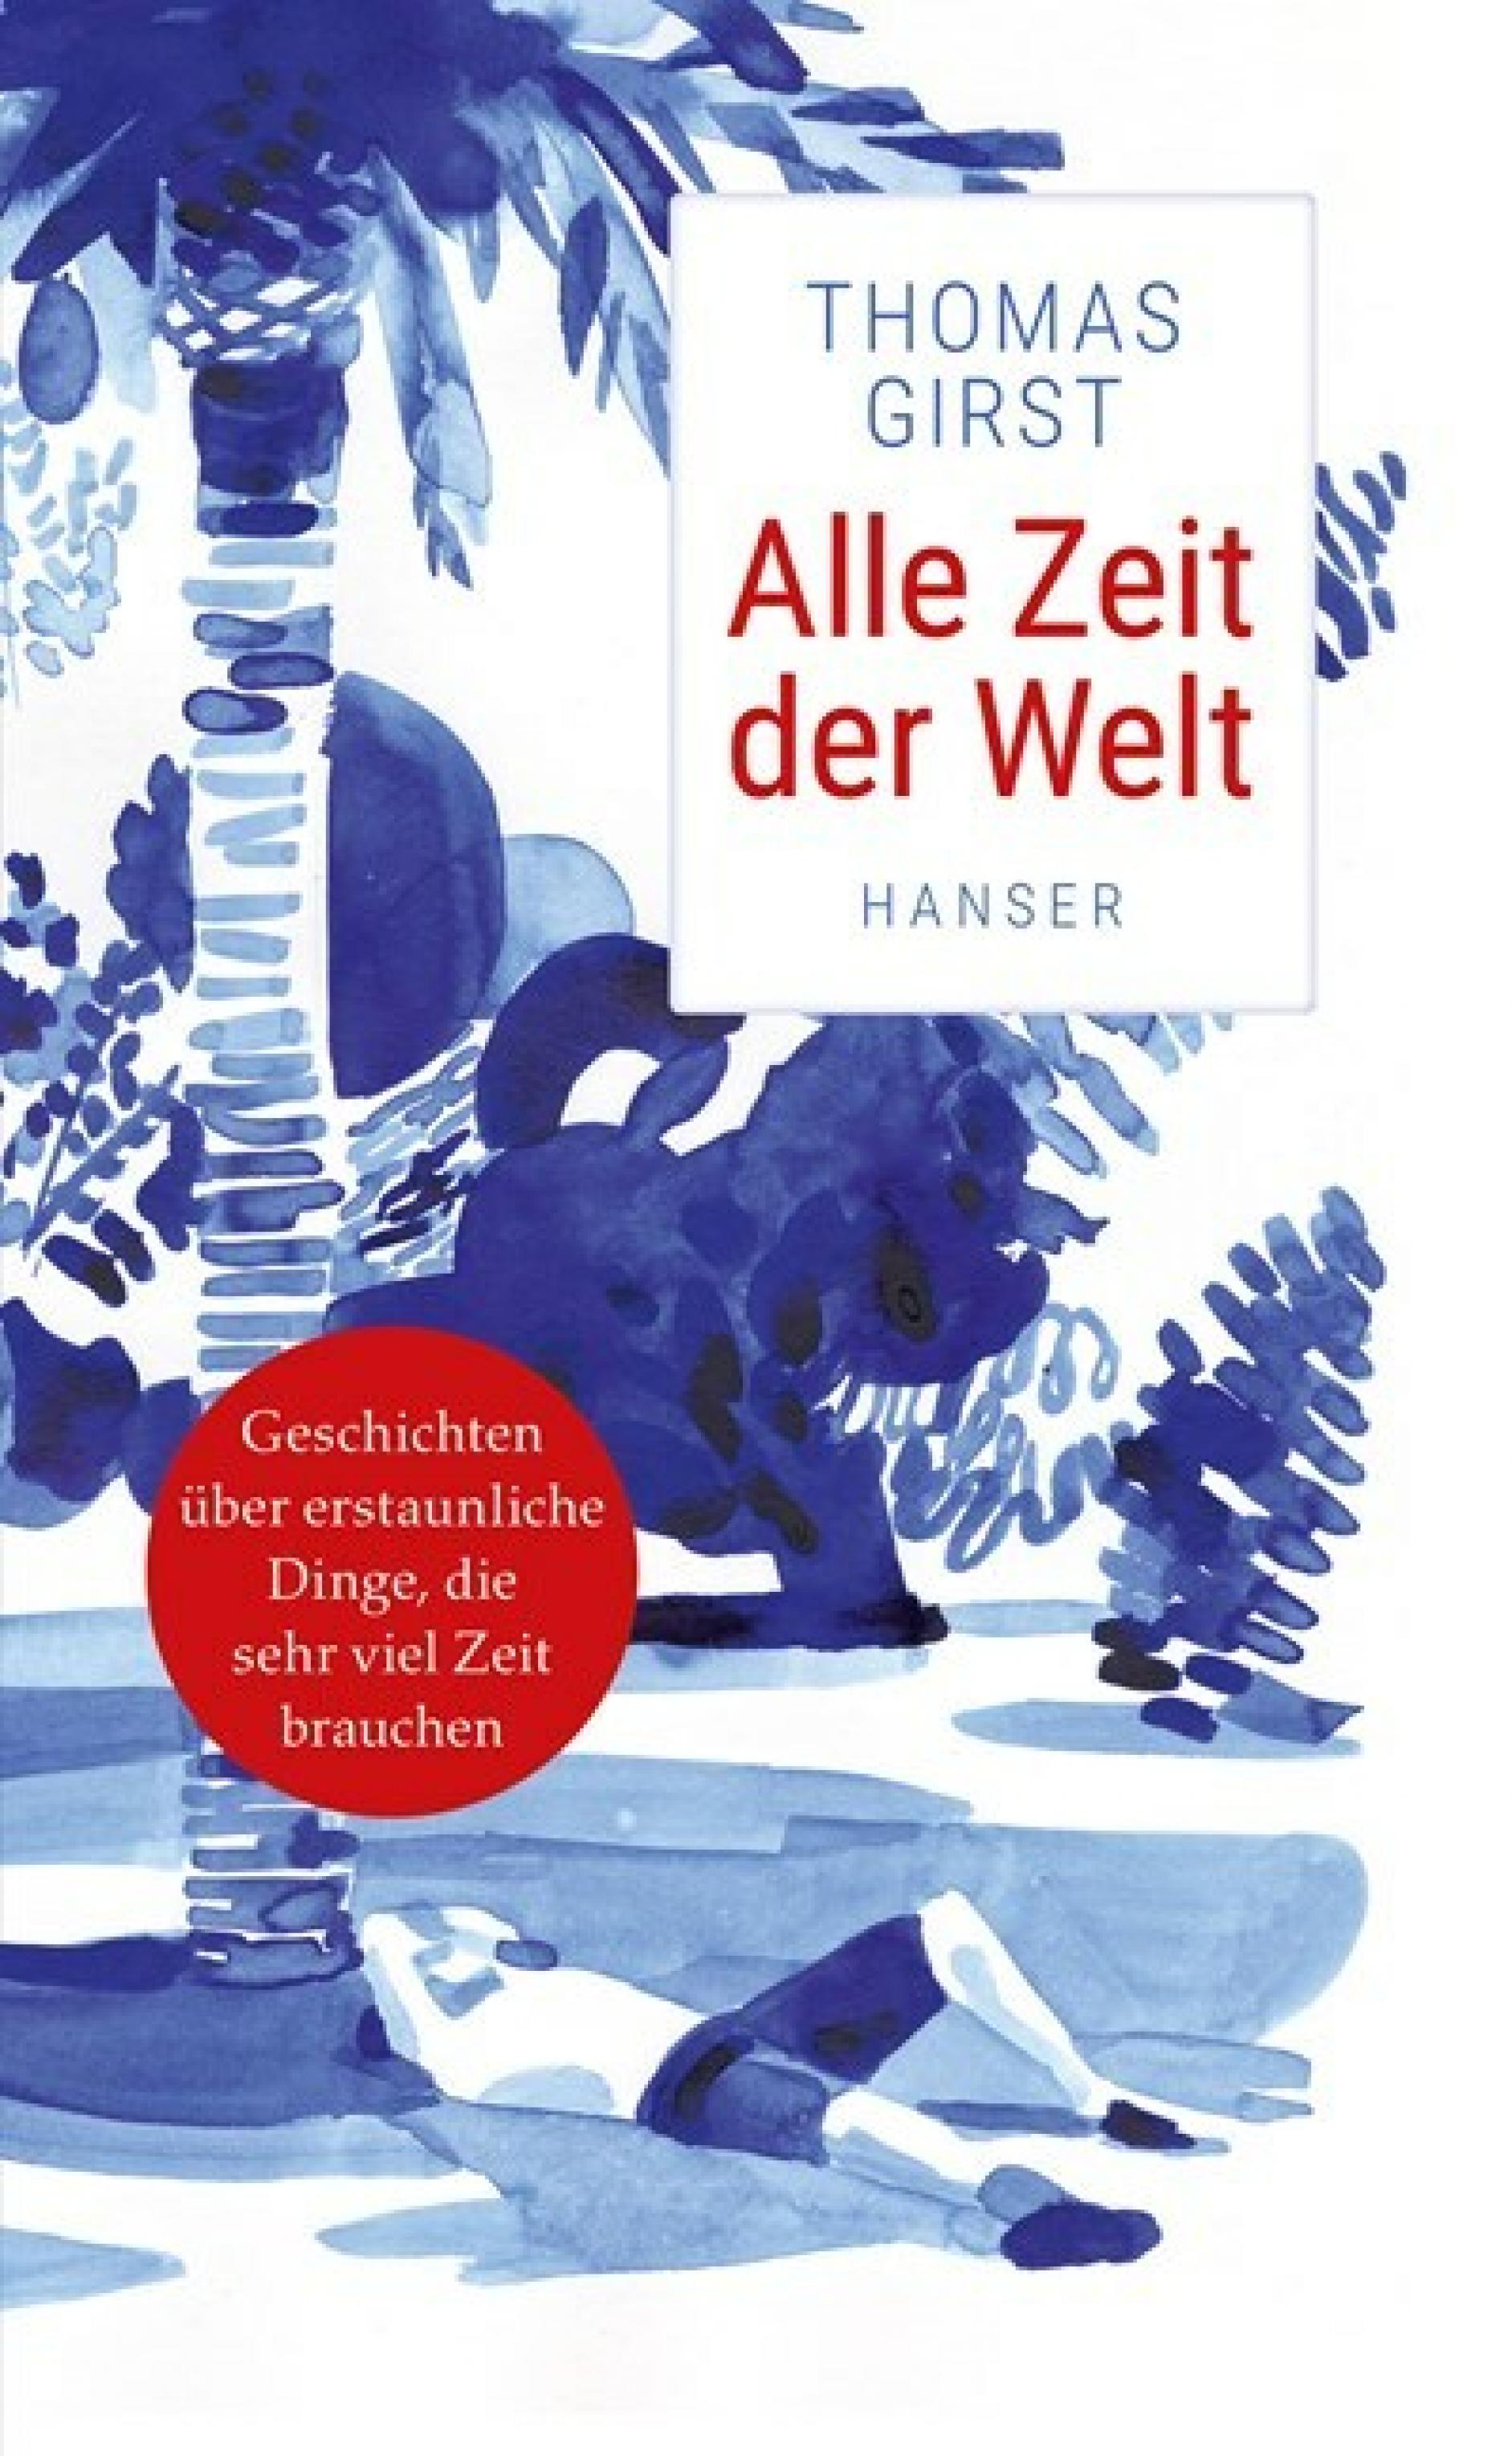 Das Buchcover von „Alle Zeit der Welt“ Hanser-Verlag: ein Mann liegt unter einer Palme, blau-weiße Zeichnung.